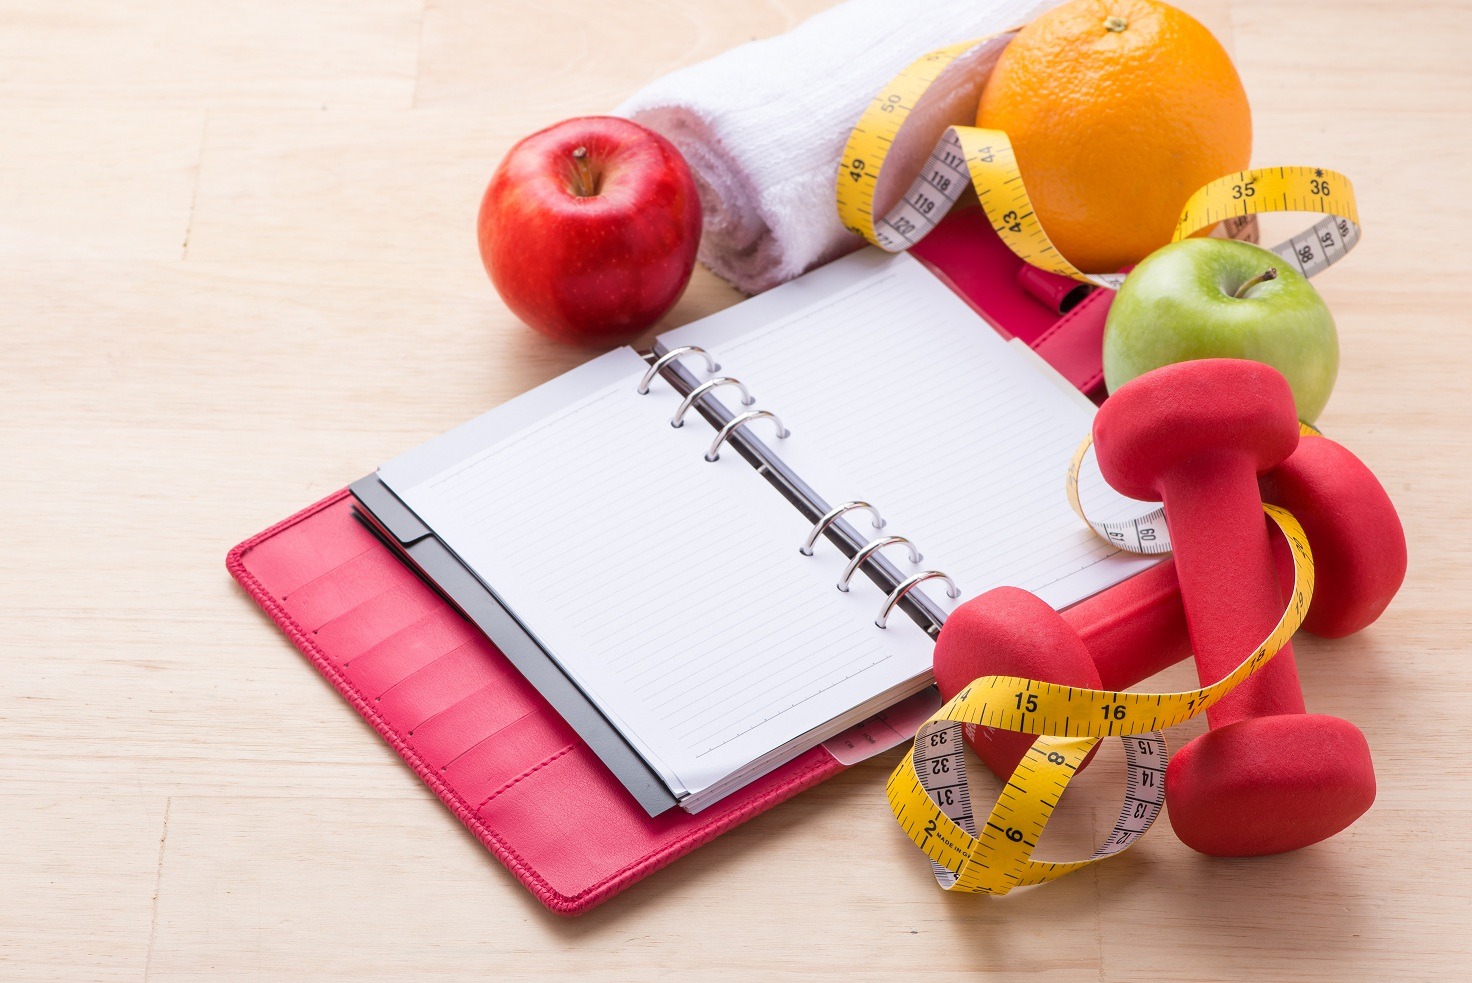 24 de sfaturi pentru a slabi fara dieta | Romania Libera